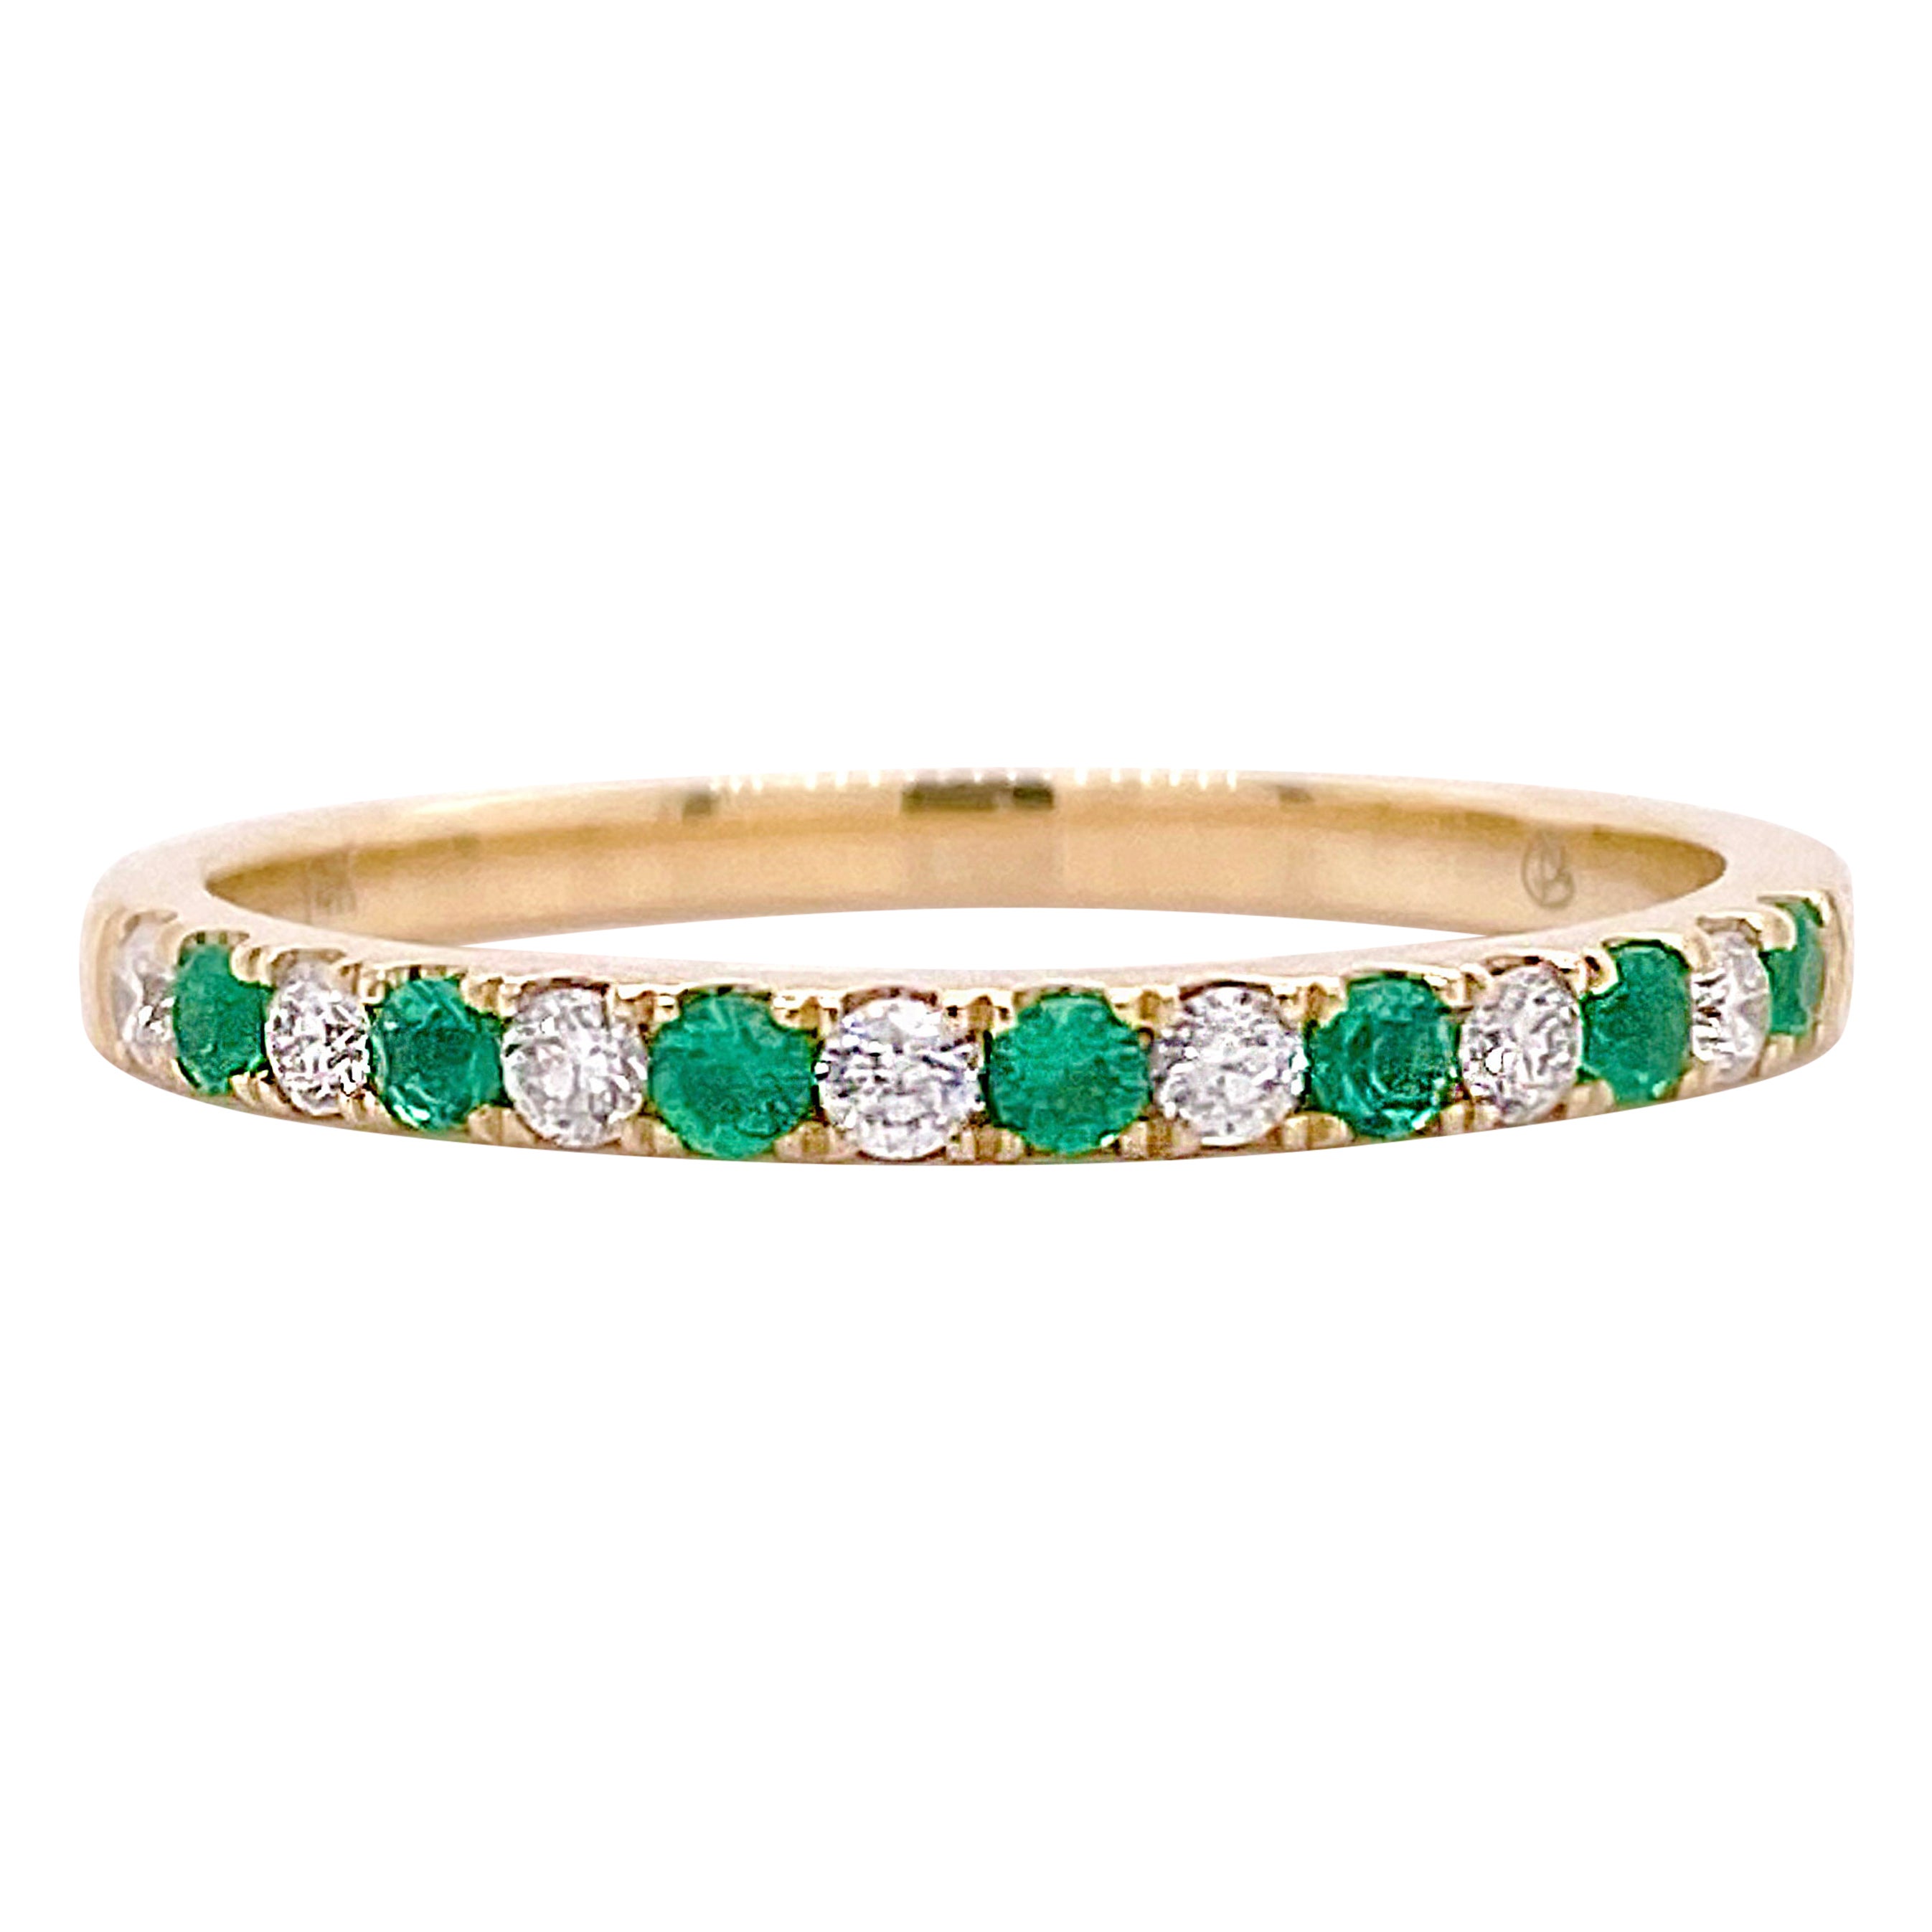 Diamant-Smaragd-Ring, Gelbgold-Ehering, grüne Smaragde und weißer Diamant